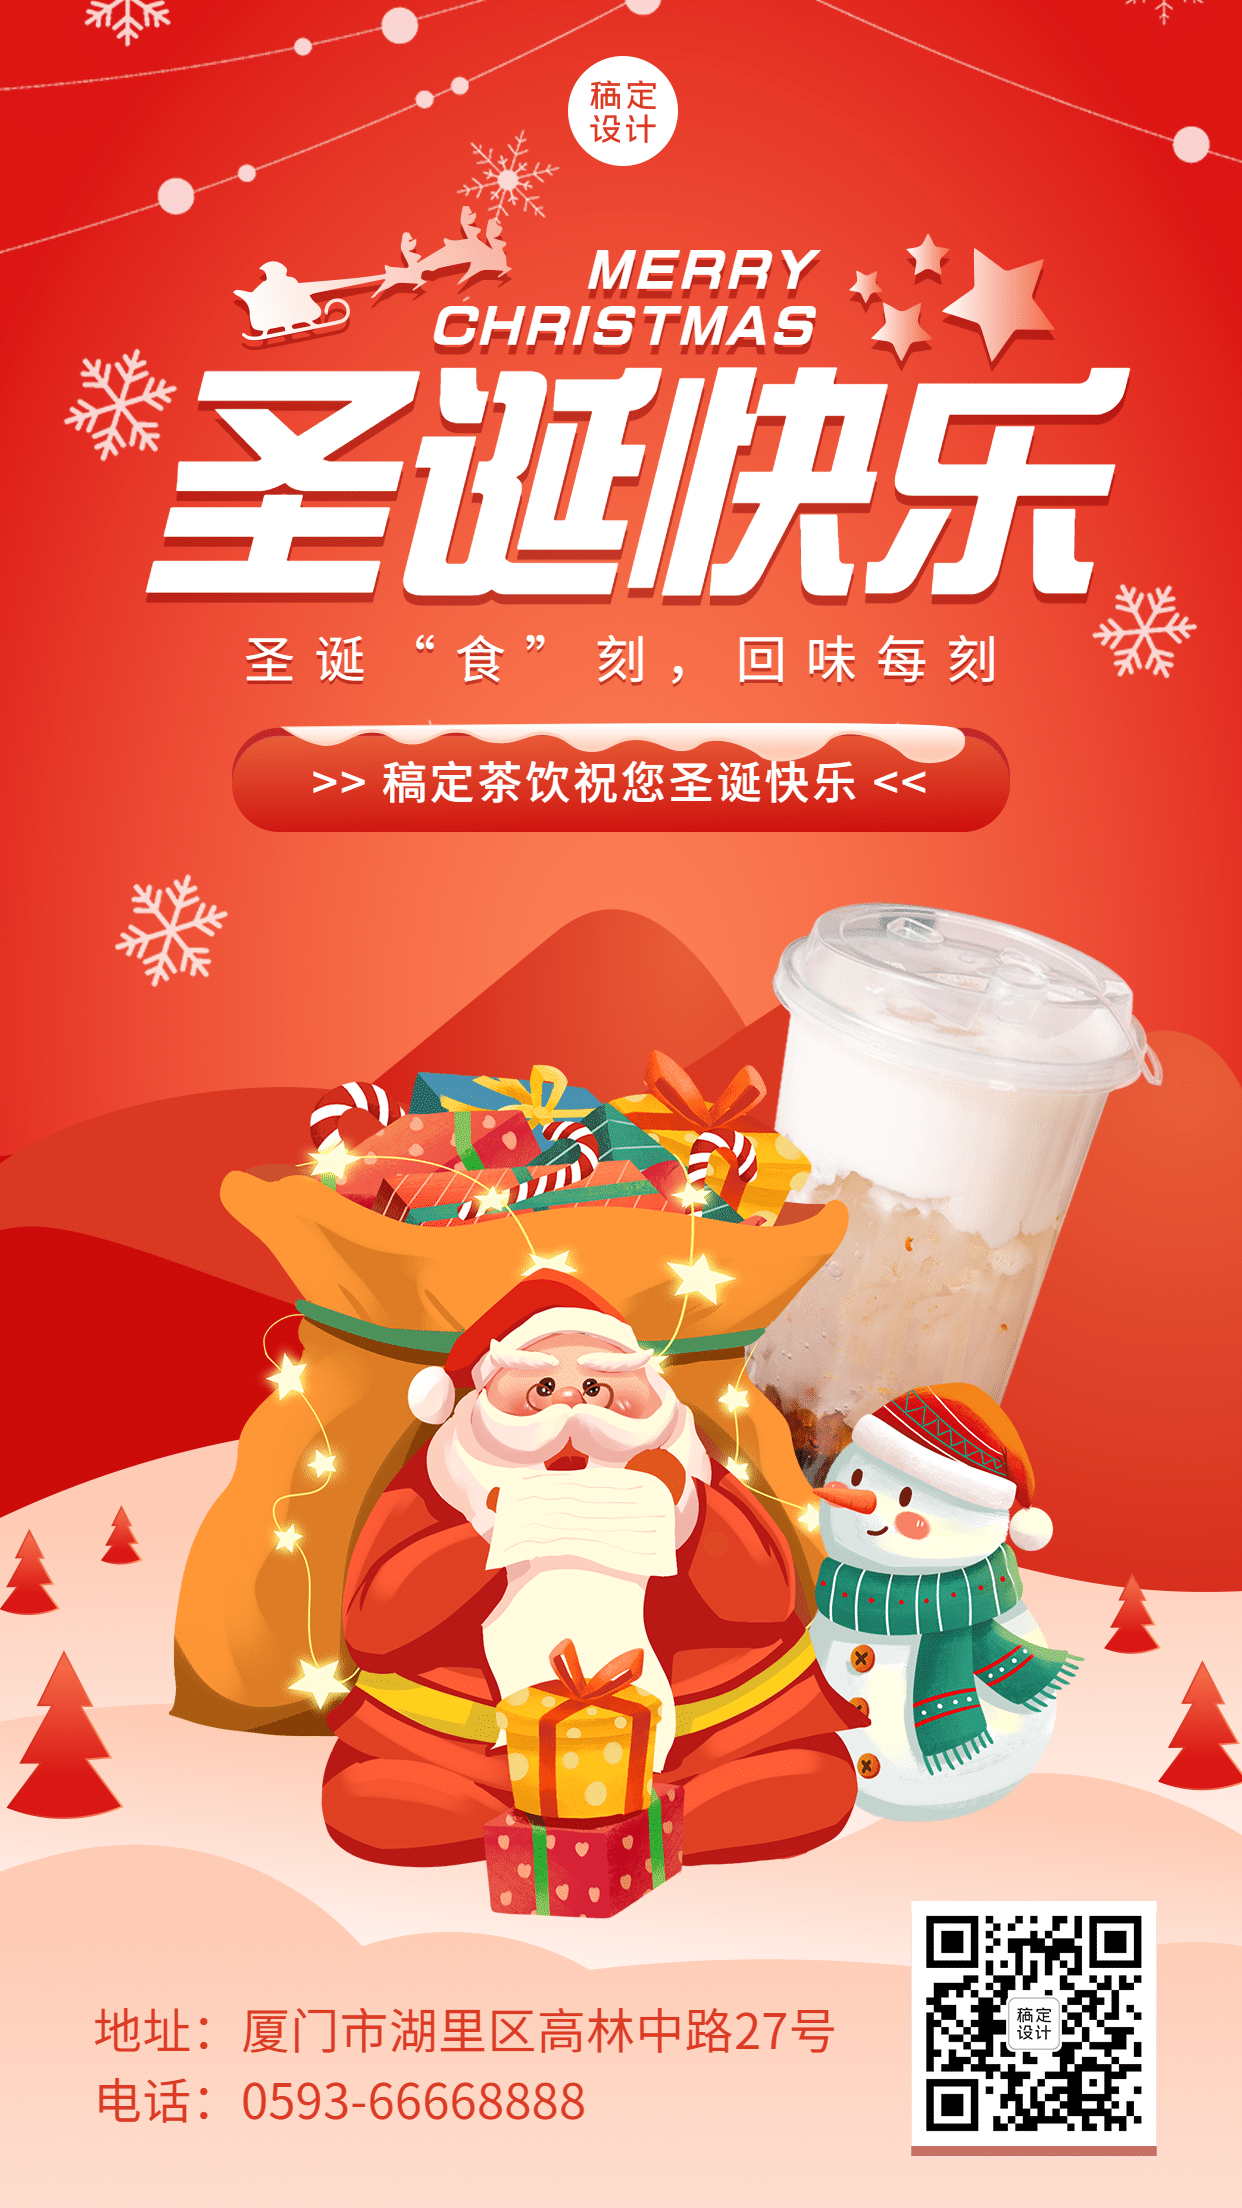 圣诞节奶茶饮品产品营销喜庆海报预览效果